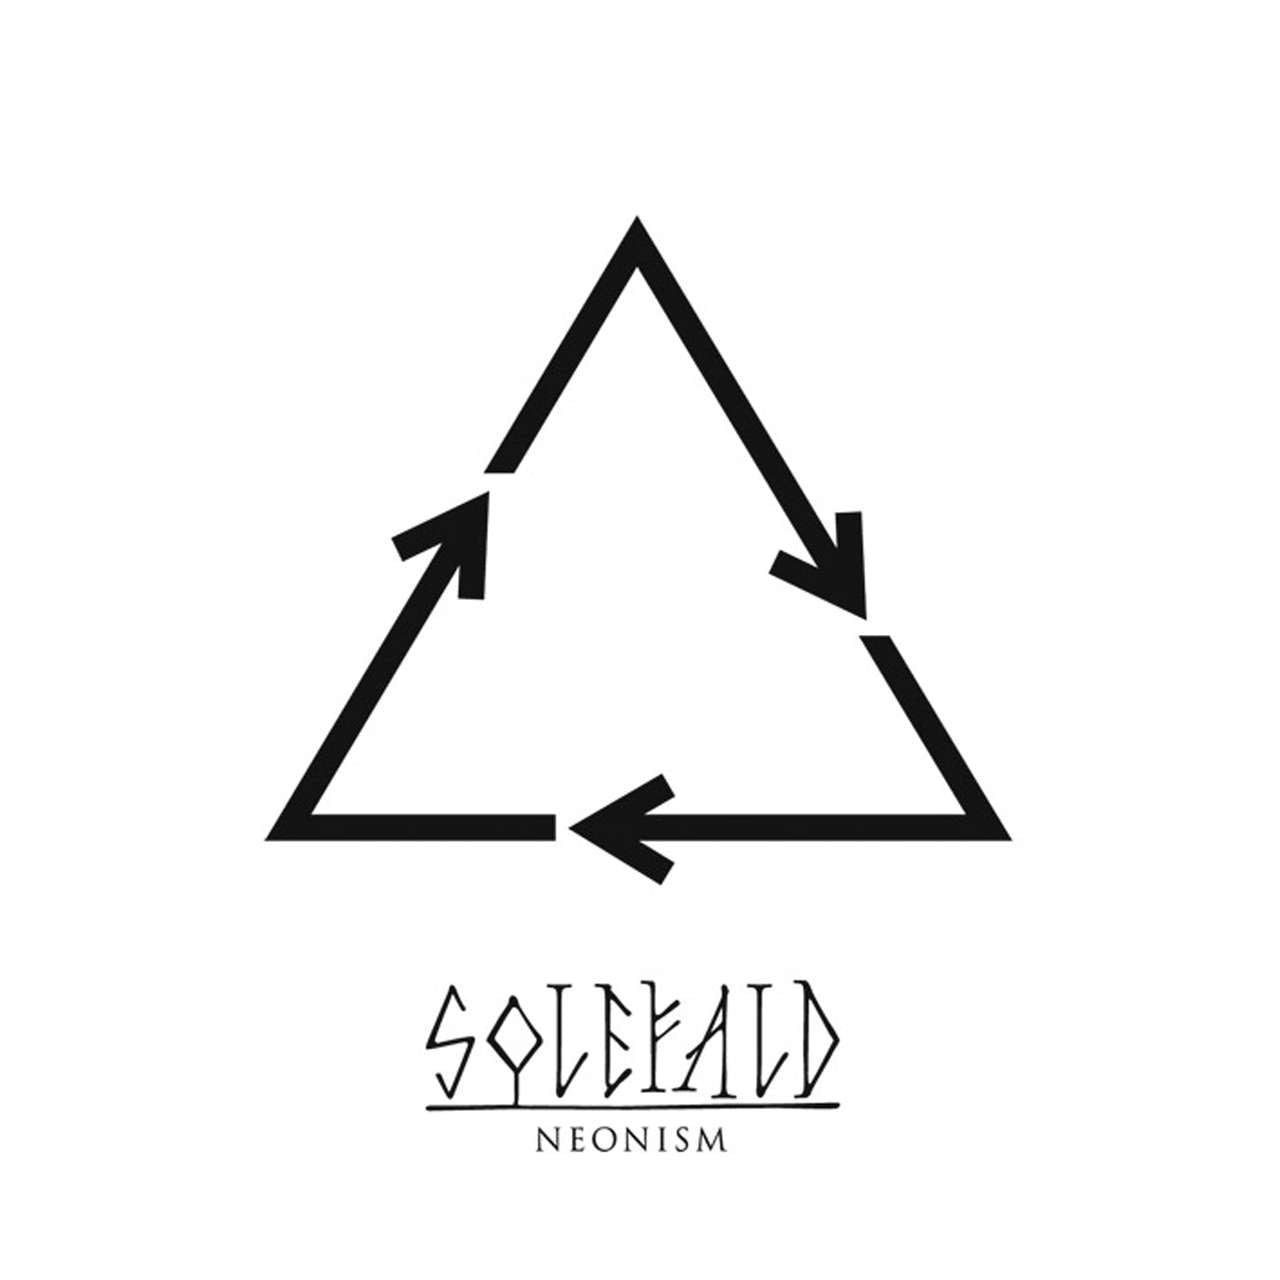 Soleflad - Neonism (2008 Reissue) (CD)